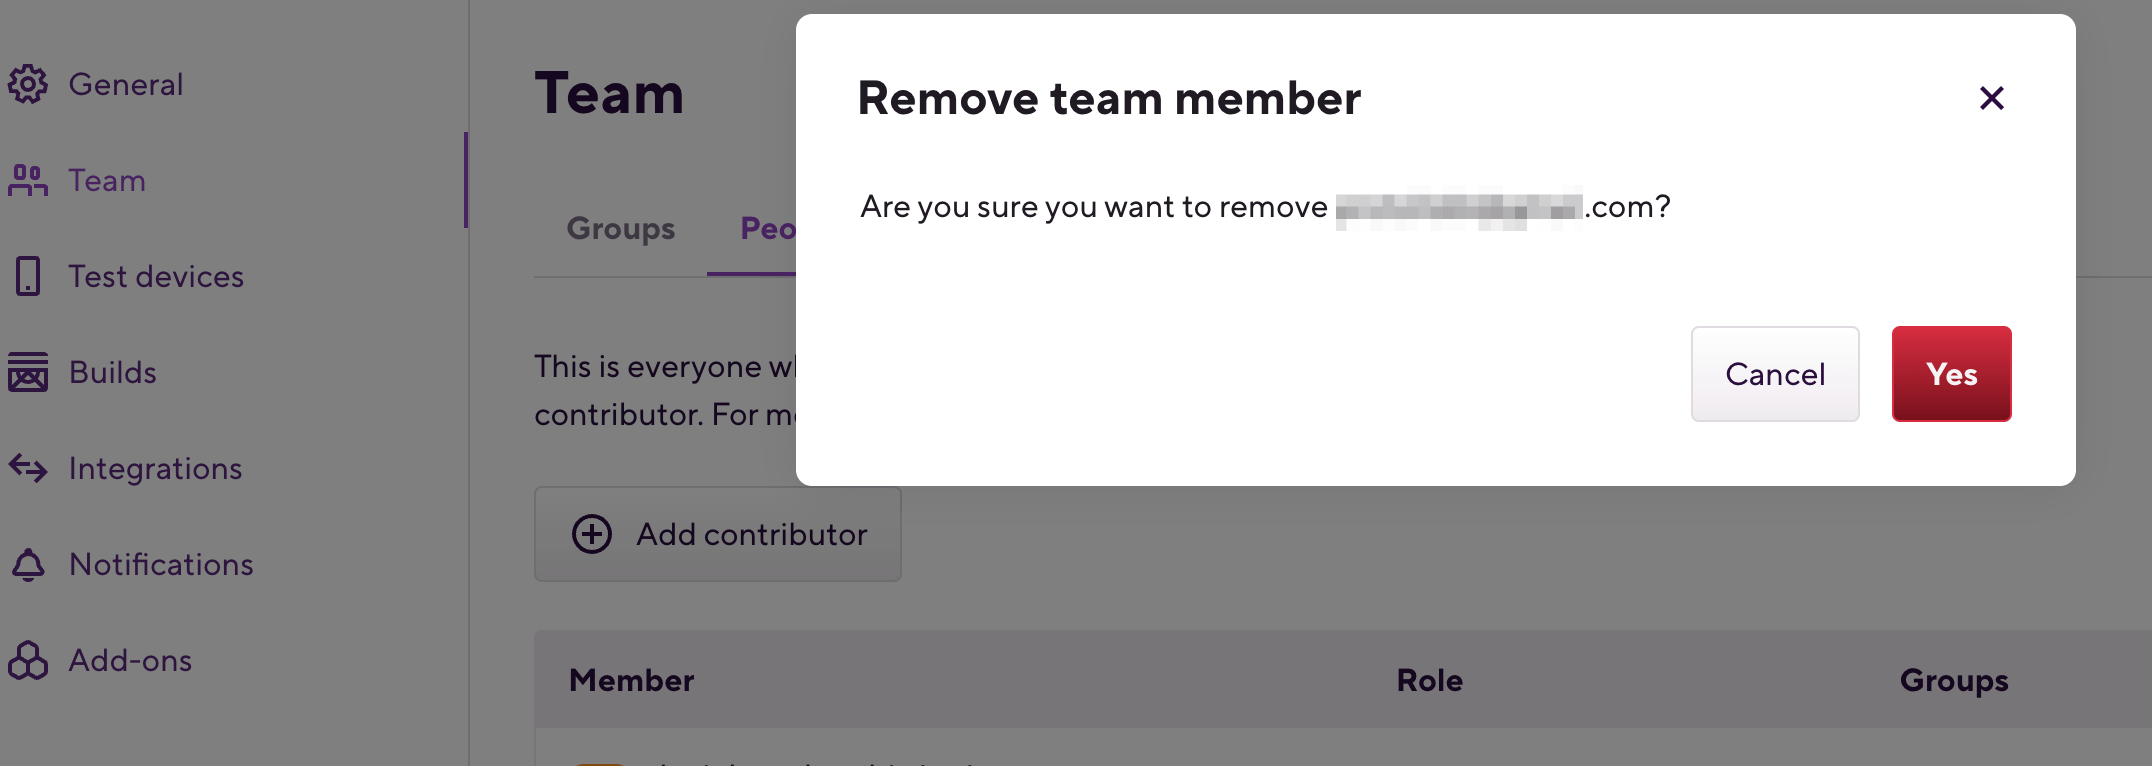 Remove_team_member.png